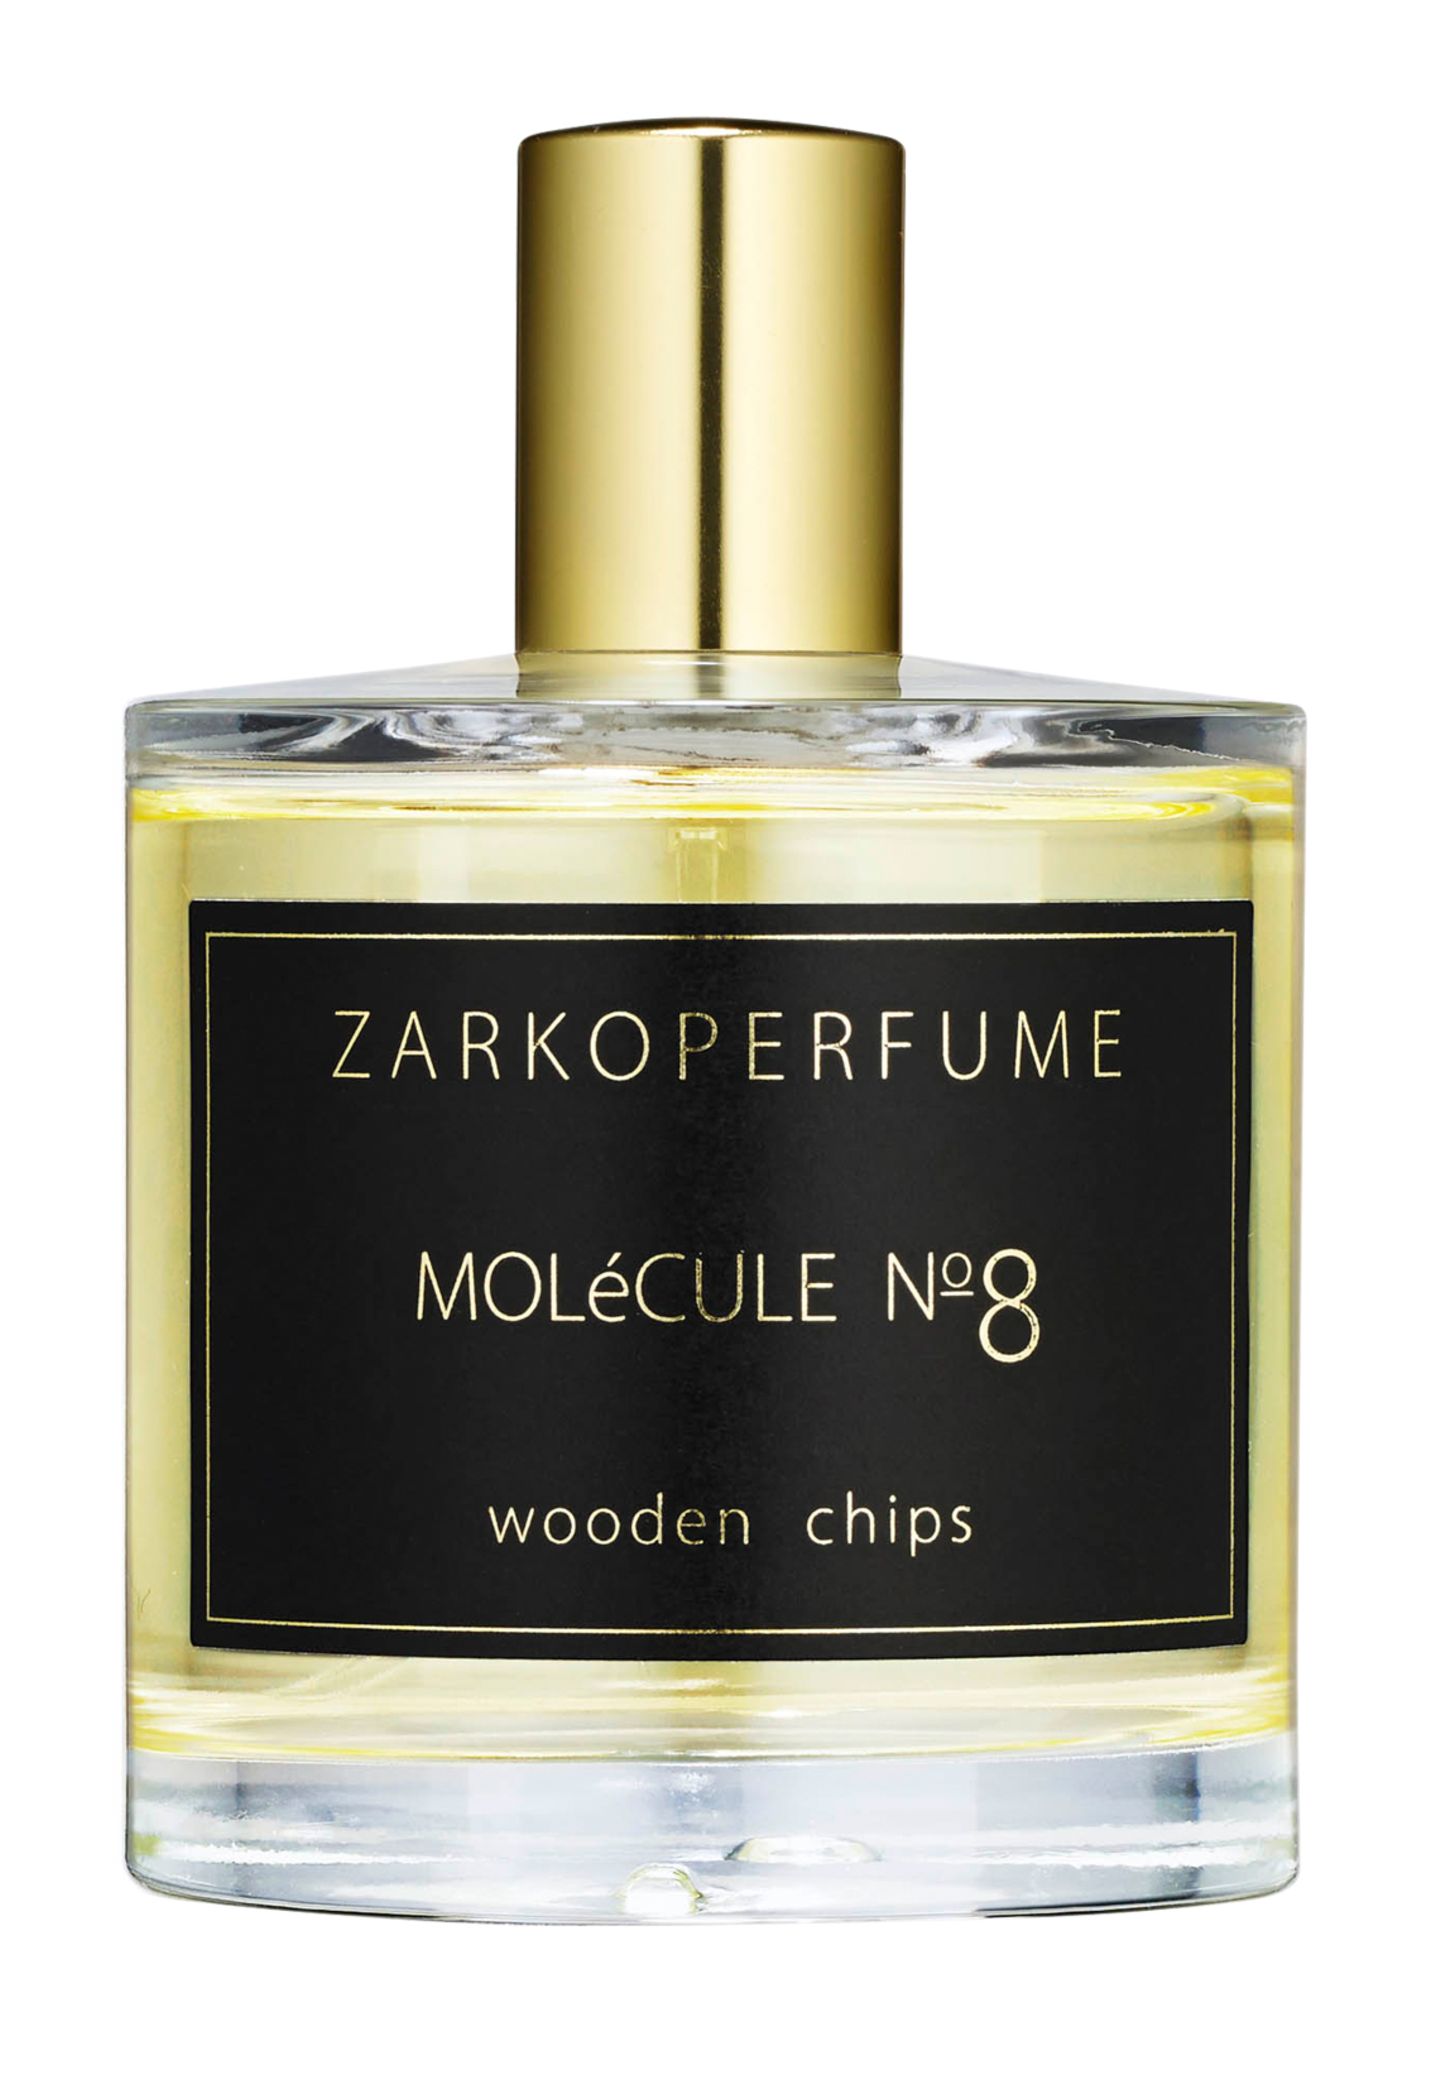 Für die Herstellung wurden Oudholzspäne in Mandarinen- und Patchouliöl eingelegt. "Molécule N°8 Wooden Chips" von Zarkoperfume, EdP, 100 ml, ca. 109 Euro, www.zarkoperfume.com